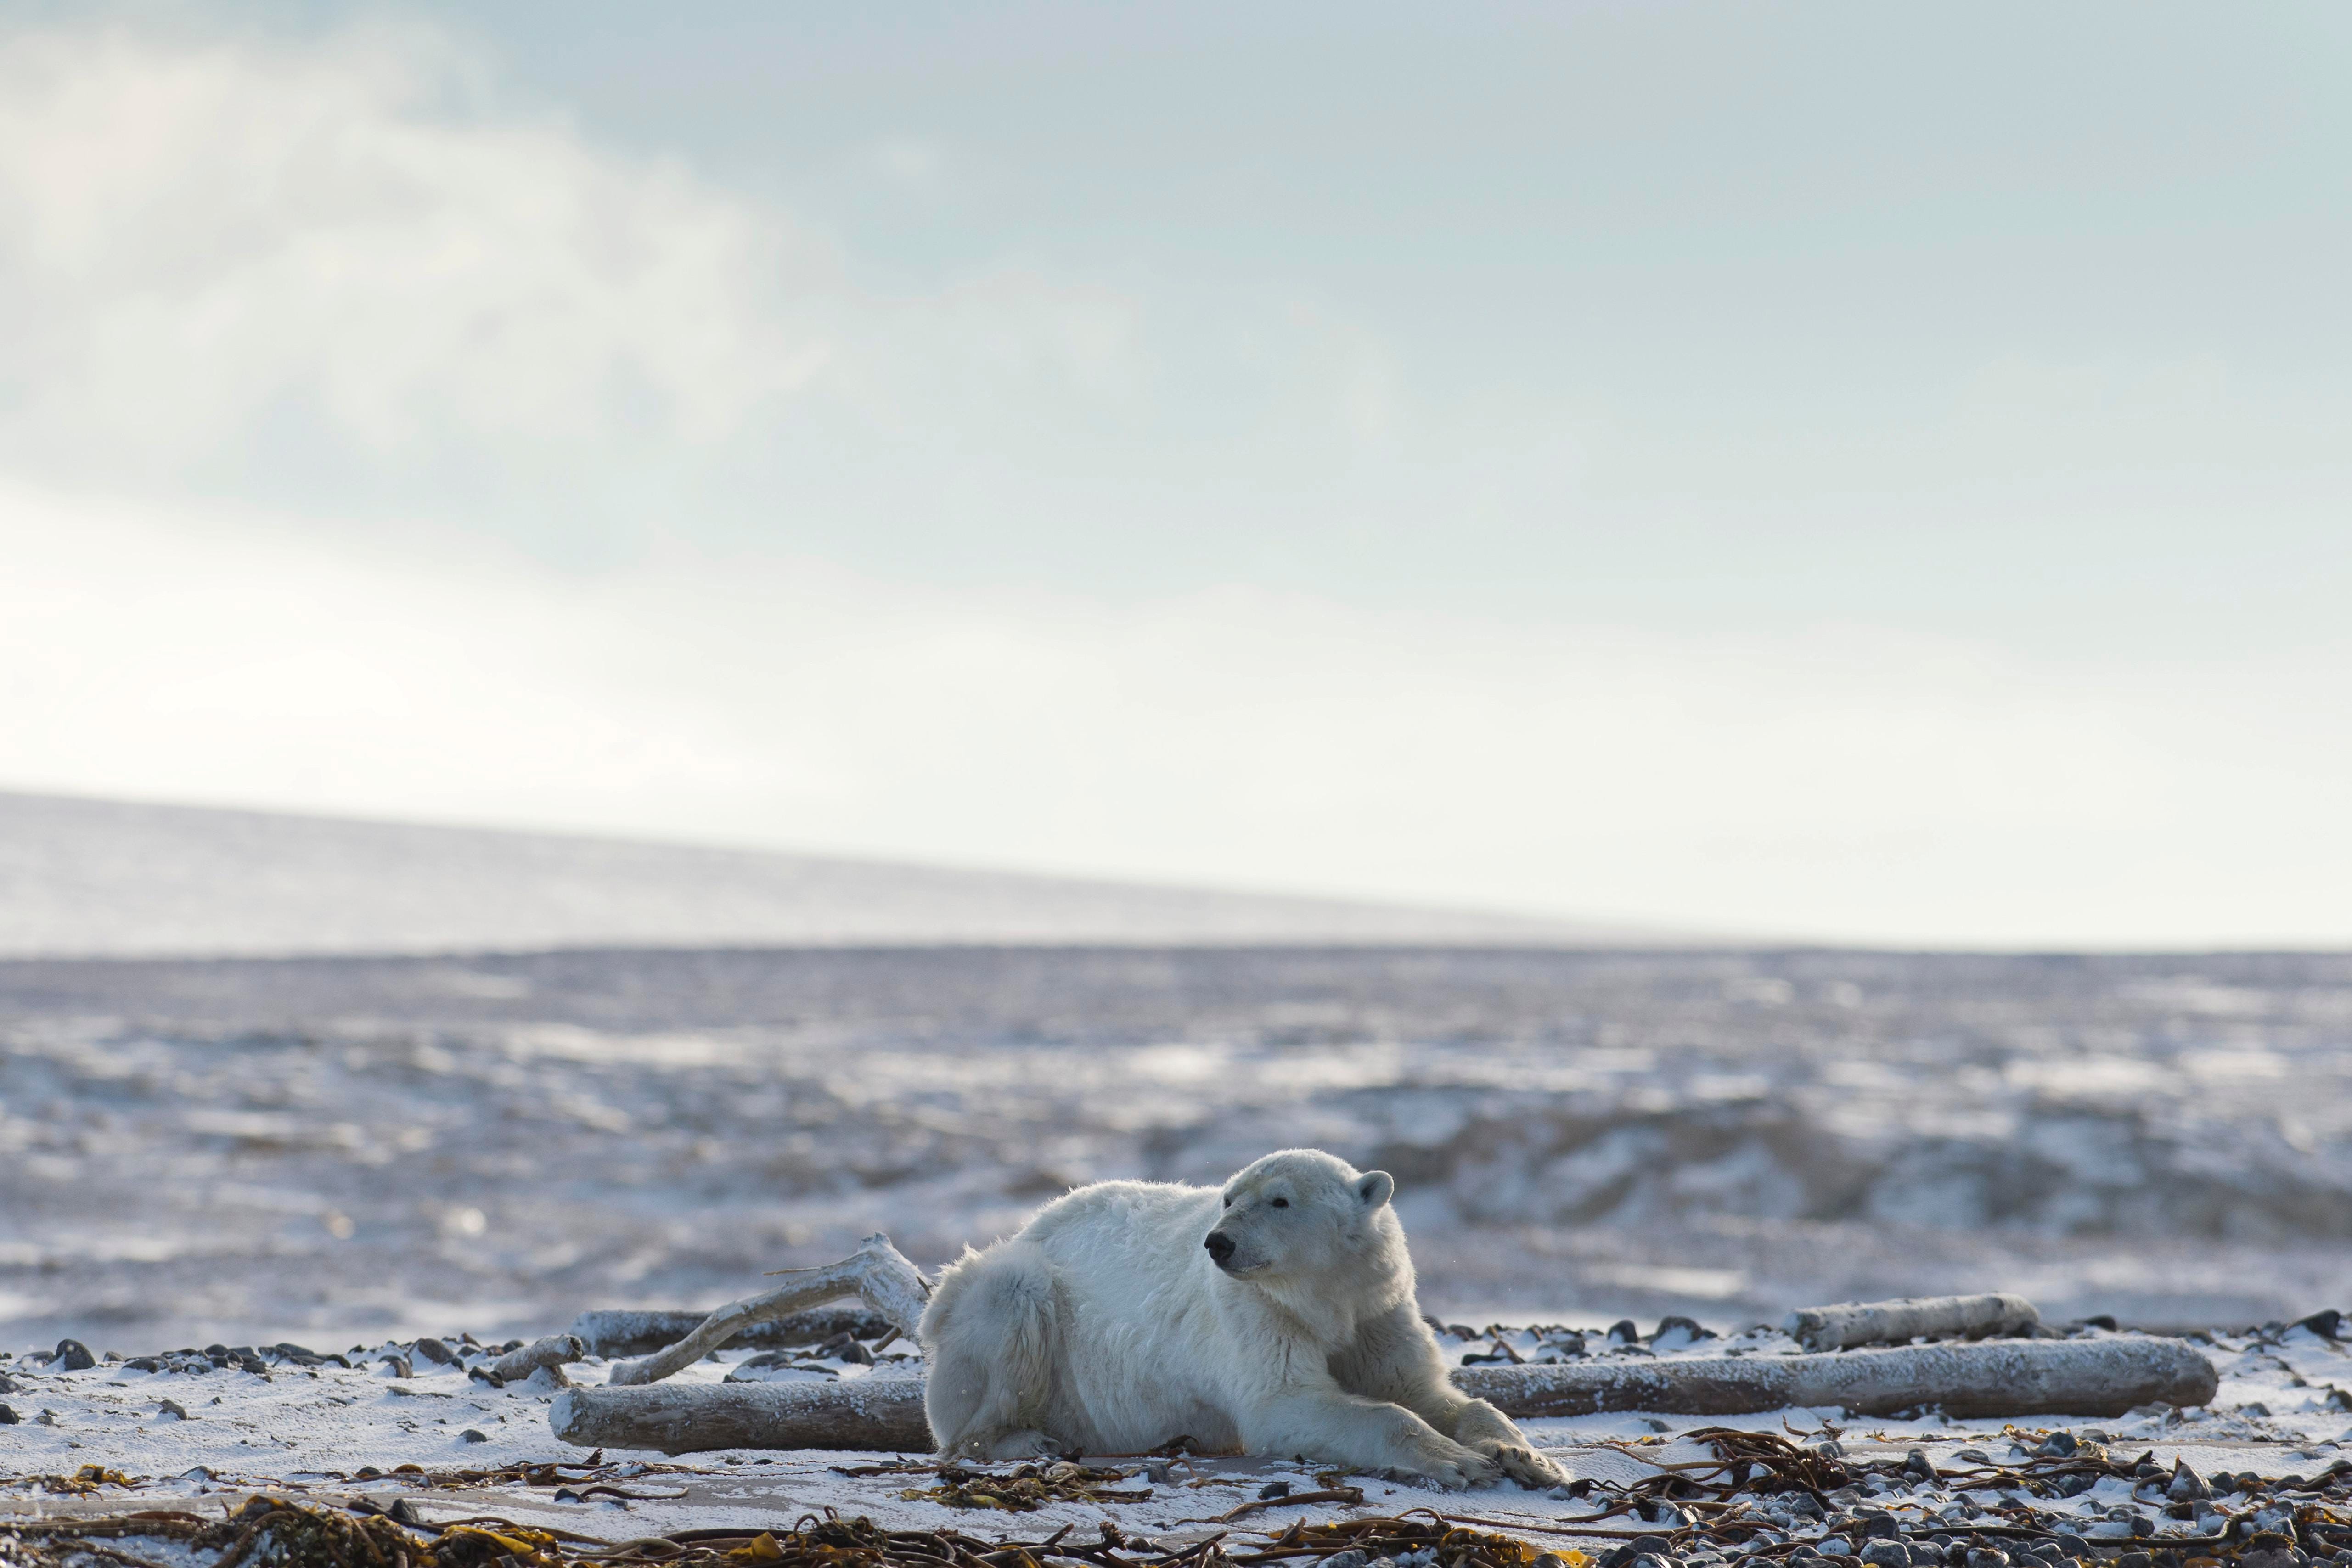 Архипелаг Шпицберген - одно из немногих мест в мире, где можно увидеть белых медведей в дикой природе